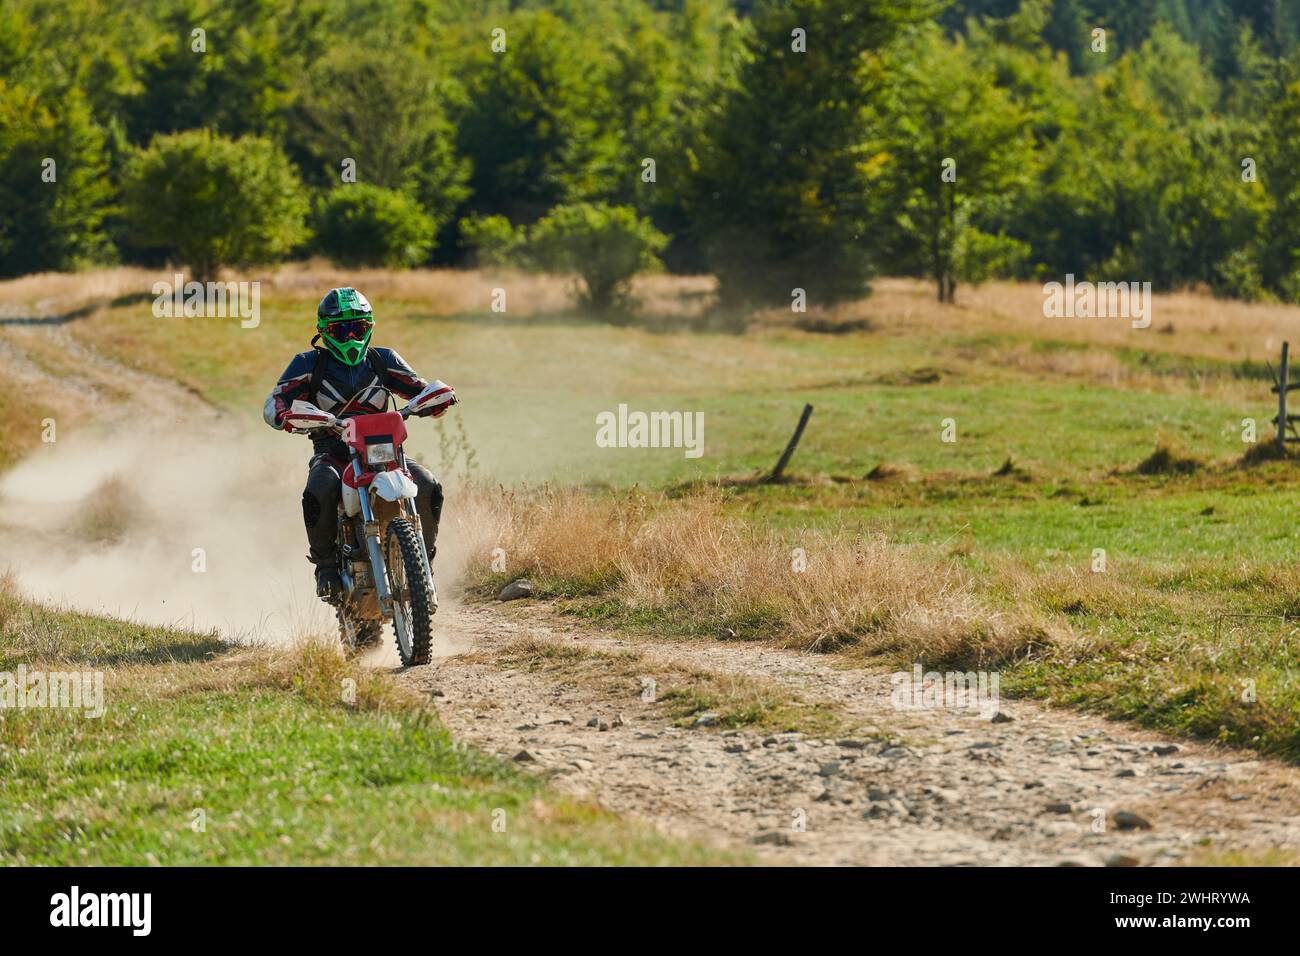 Un pilote de motocross professionnel qui roule de manière exaltante sur une piste forestière hors route dangereuse sur sa moto. Banque D'Images